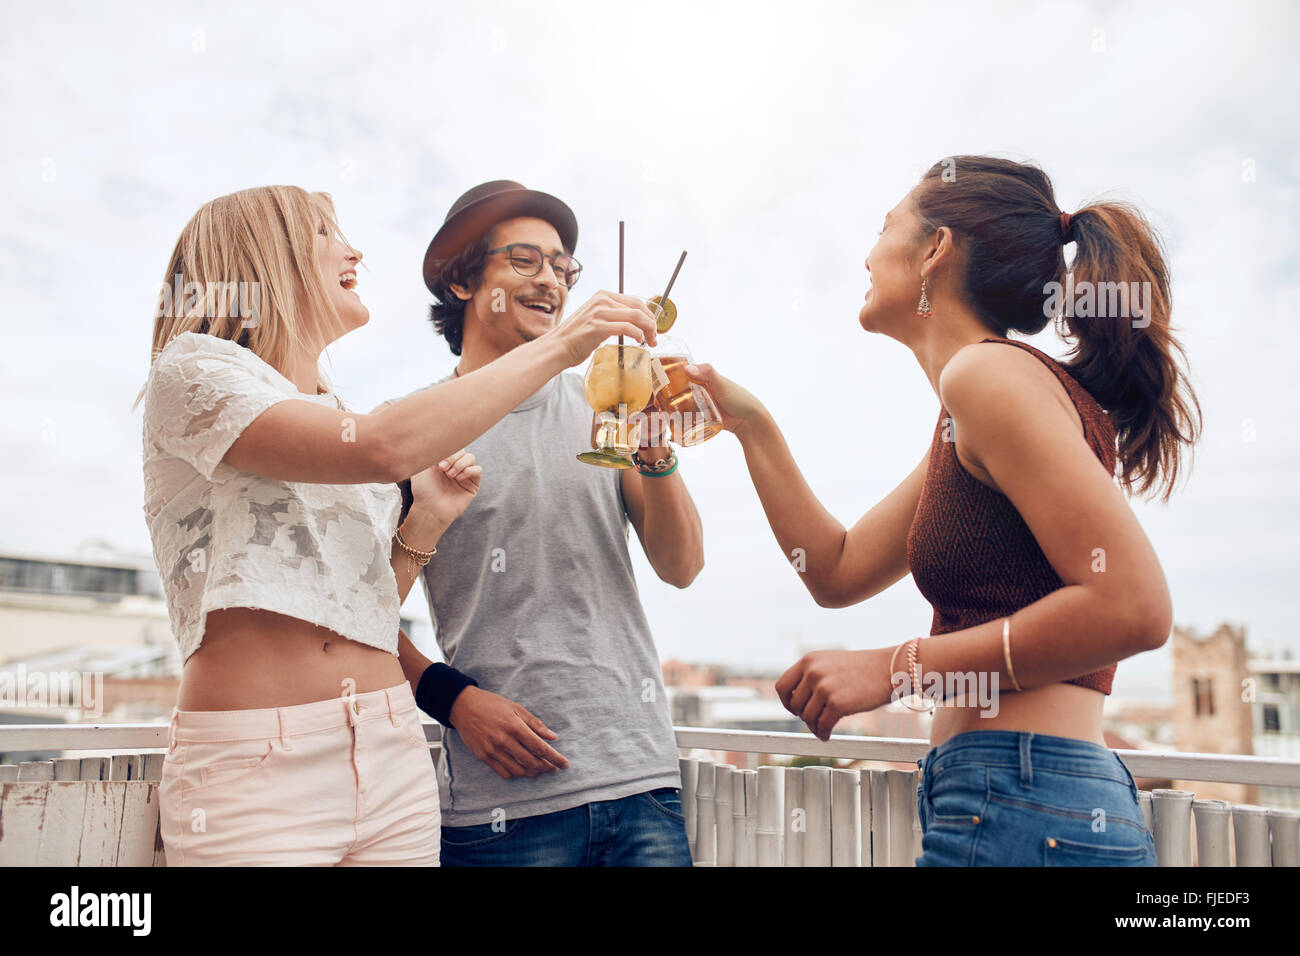 Im Freien Schuss junger Menschen auf einer Party Cocktails genießen. Drei junge Freunde Toasten Getränke während Party auf dem Dach. Stockfoto